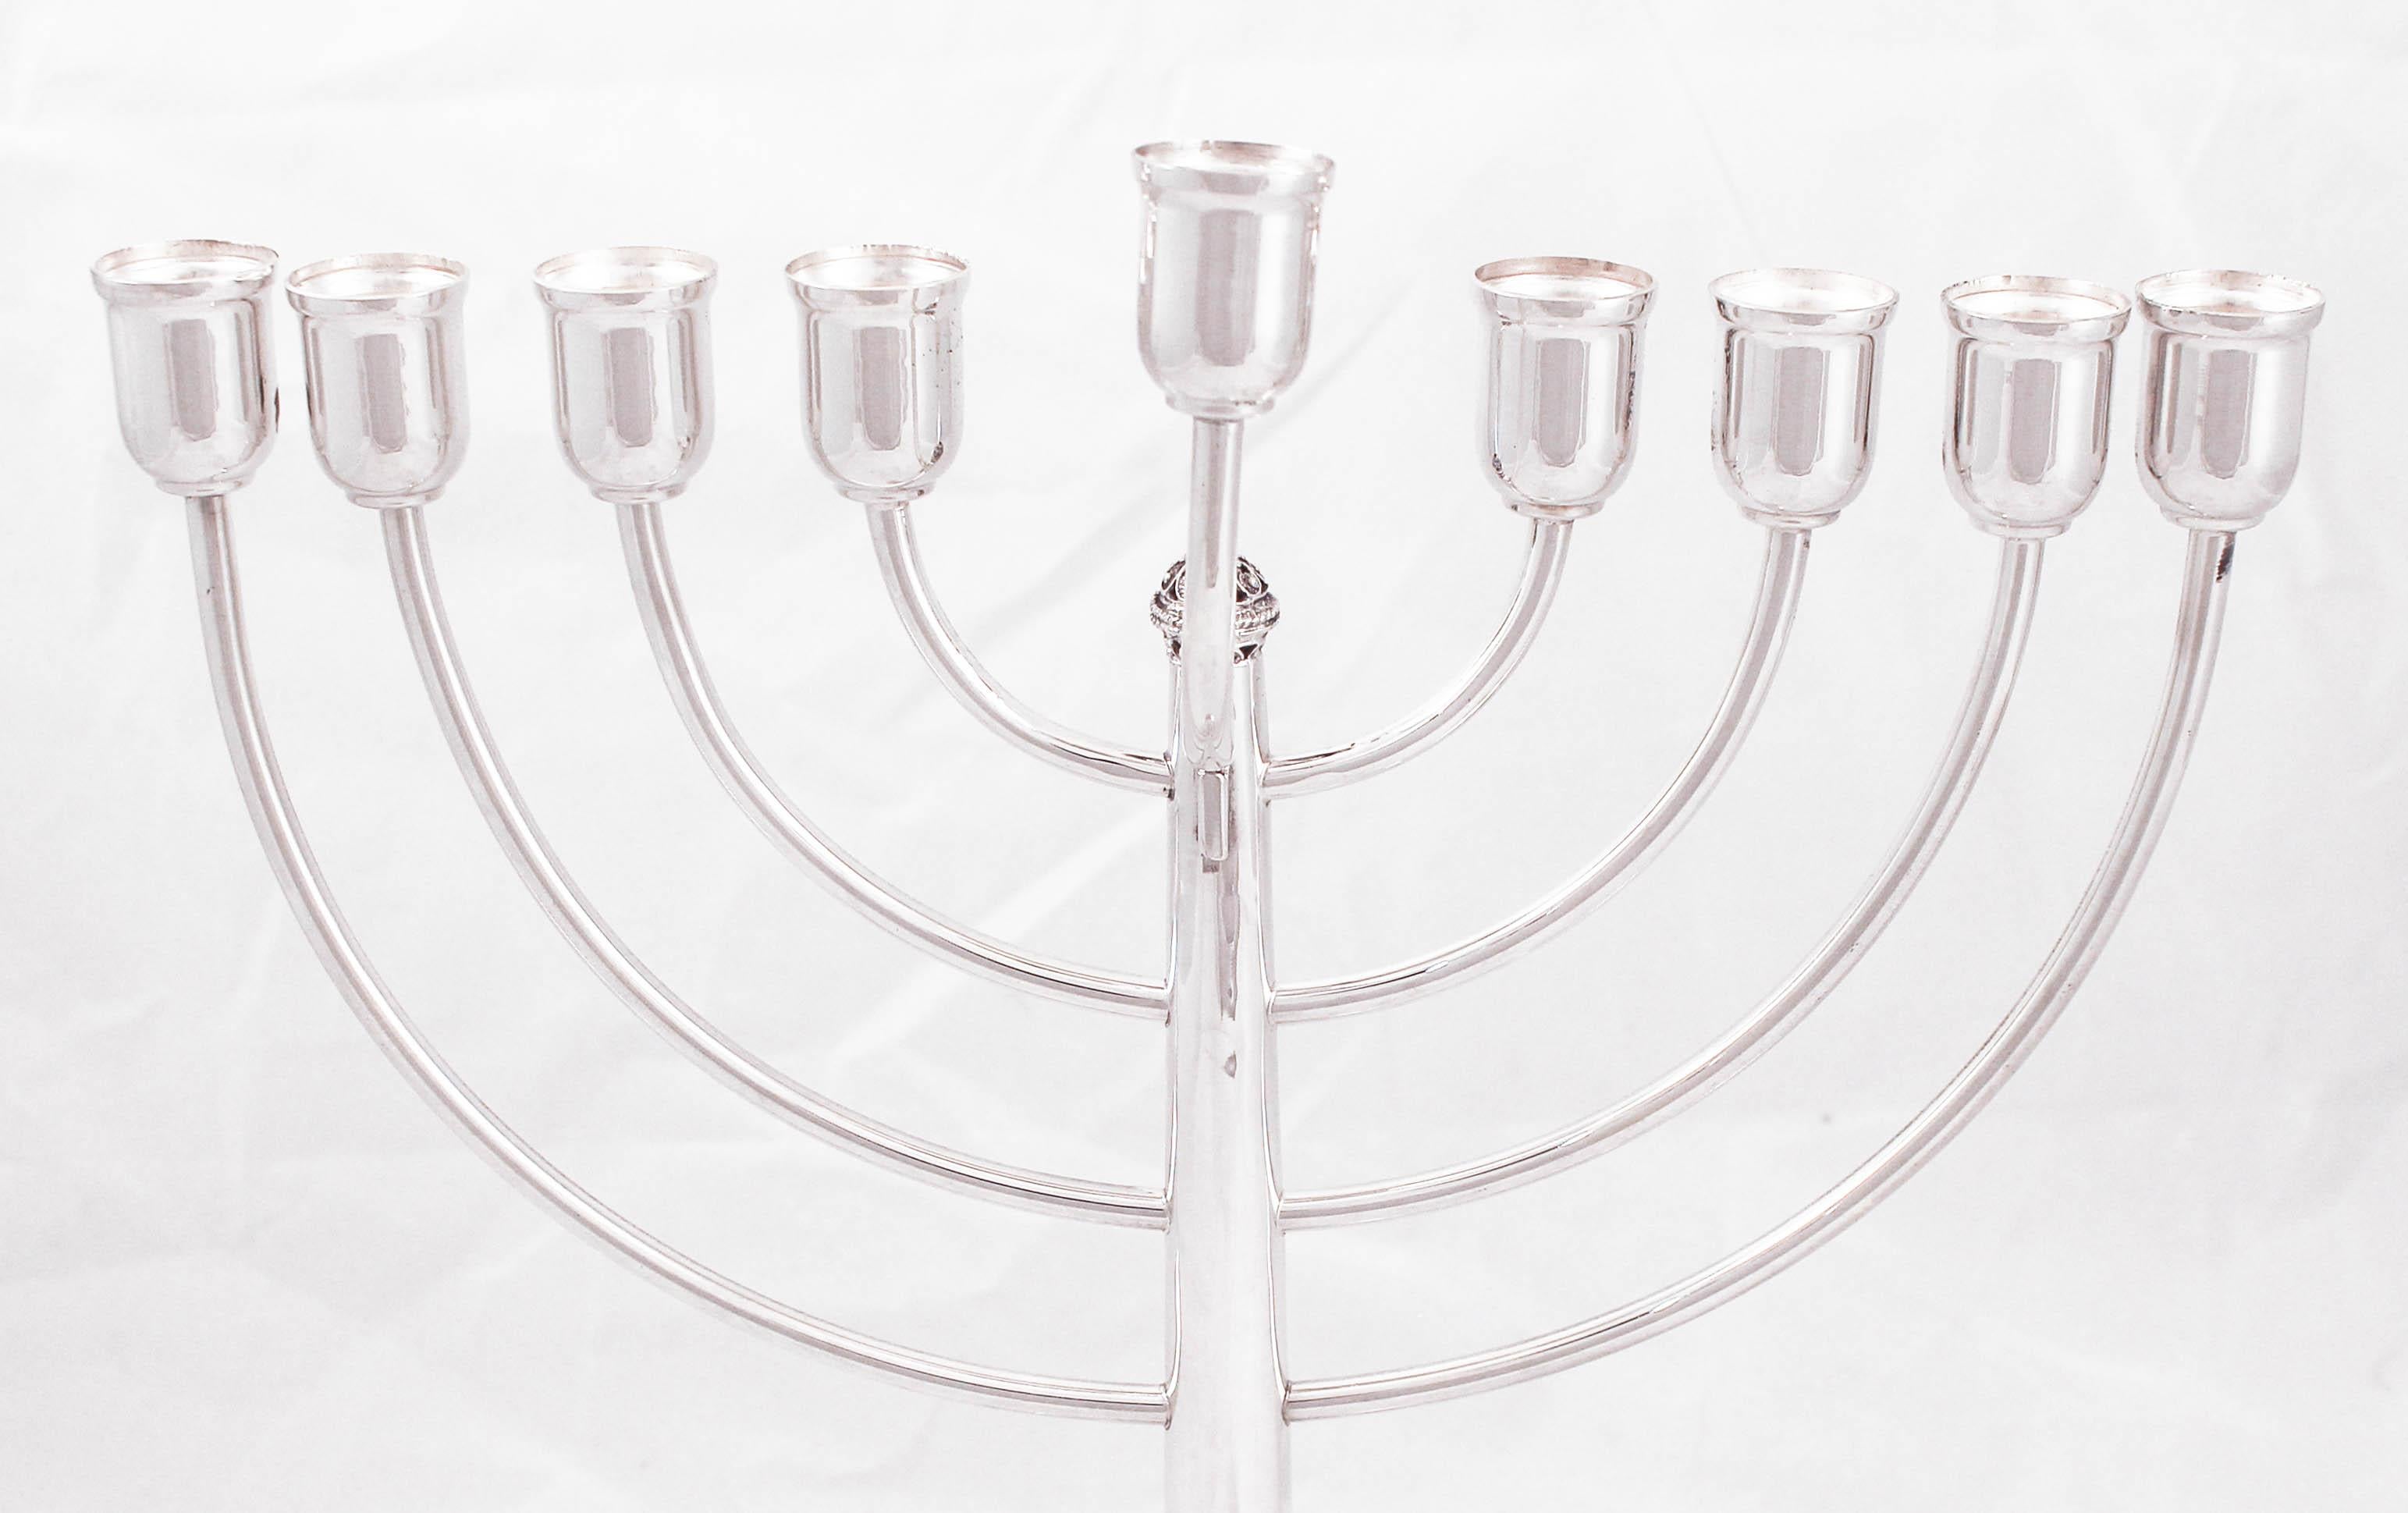 Nous sommes ravis de vous proposer cette ménorah en argent sterling fabriquée en Israël. La fête des lumières, comme on l'appelle souvent à Hanoukka, est commentée par l'allumage de la ménorah à chacune des huit nuits de la fête. Quelle belle façon